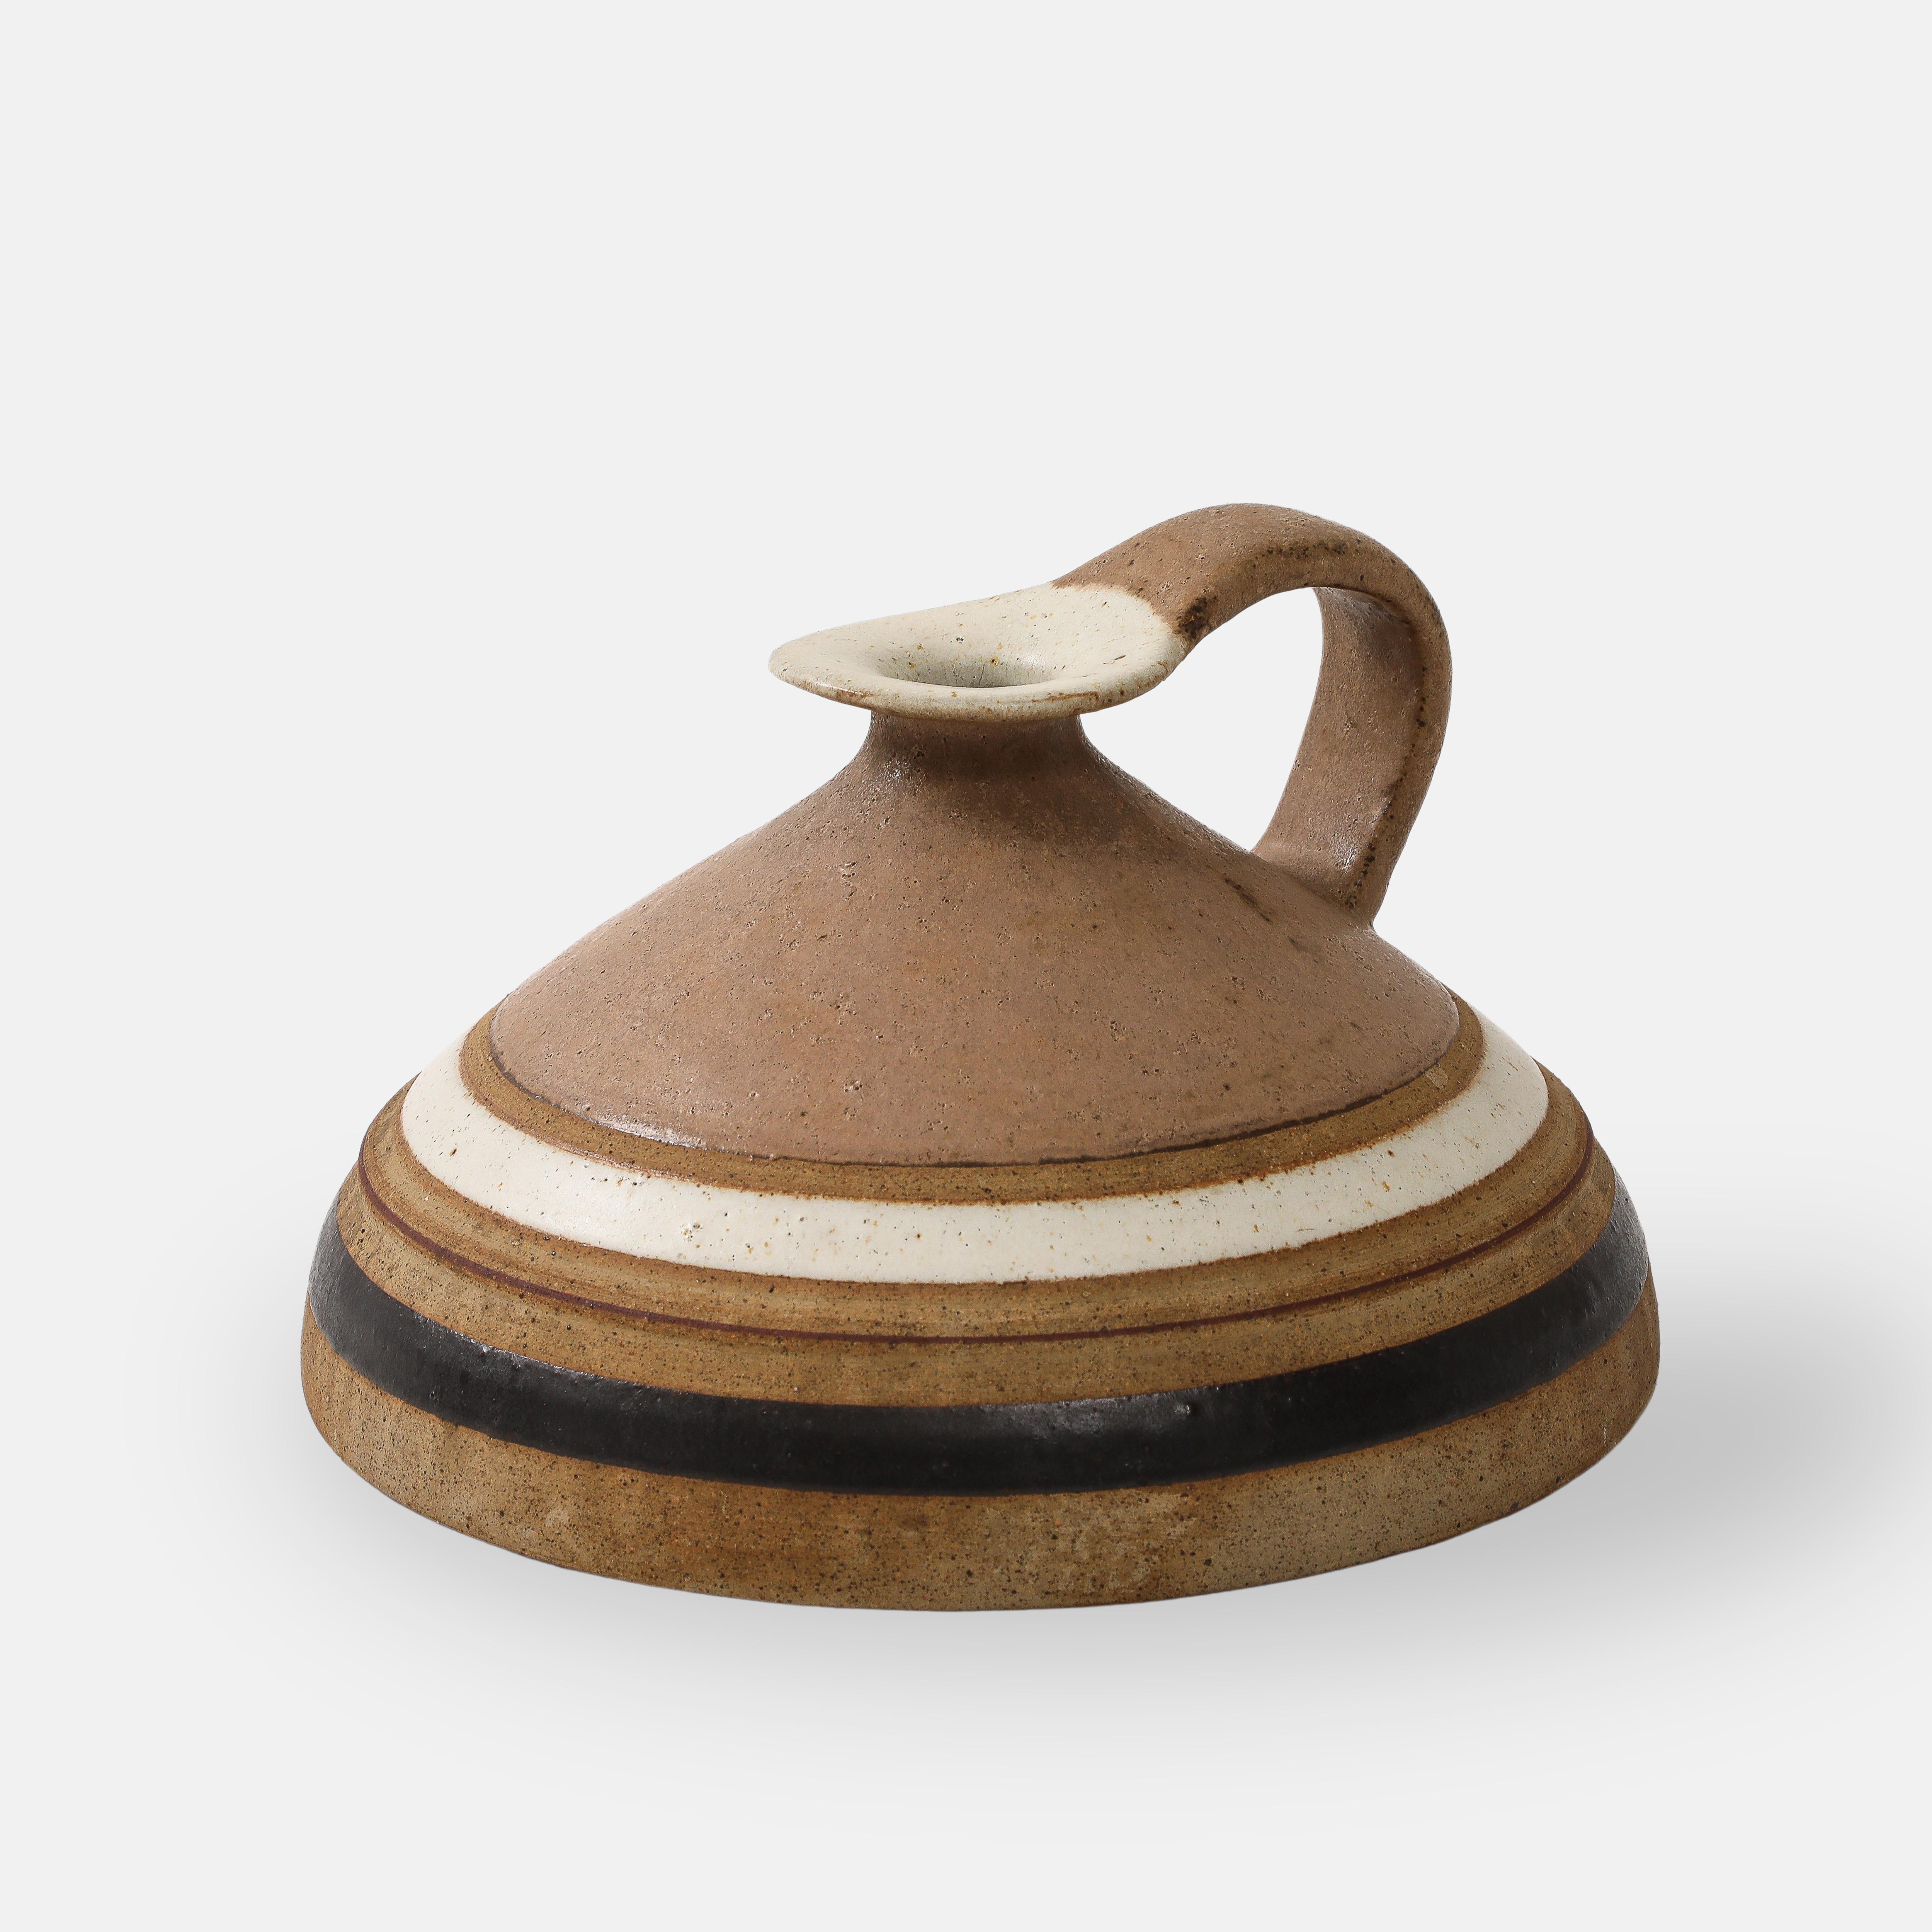 Bruno Gambone Keramikkrug oder Krug mit Henkel in hellbrauner oder Kamelglasur mit Bändern aus  cremefarben und dunkelbraun.
Signiert auf der Unterseite 